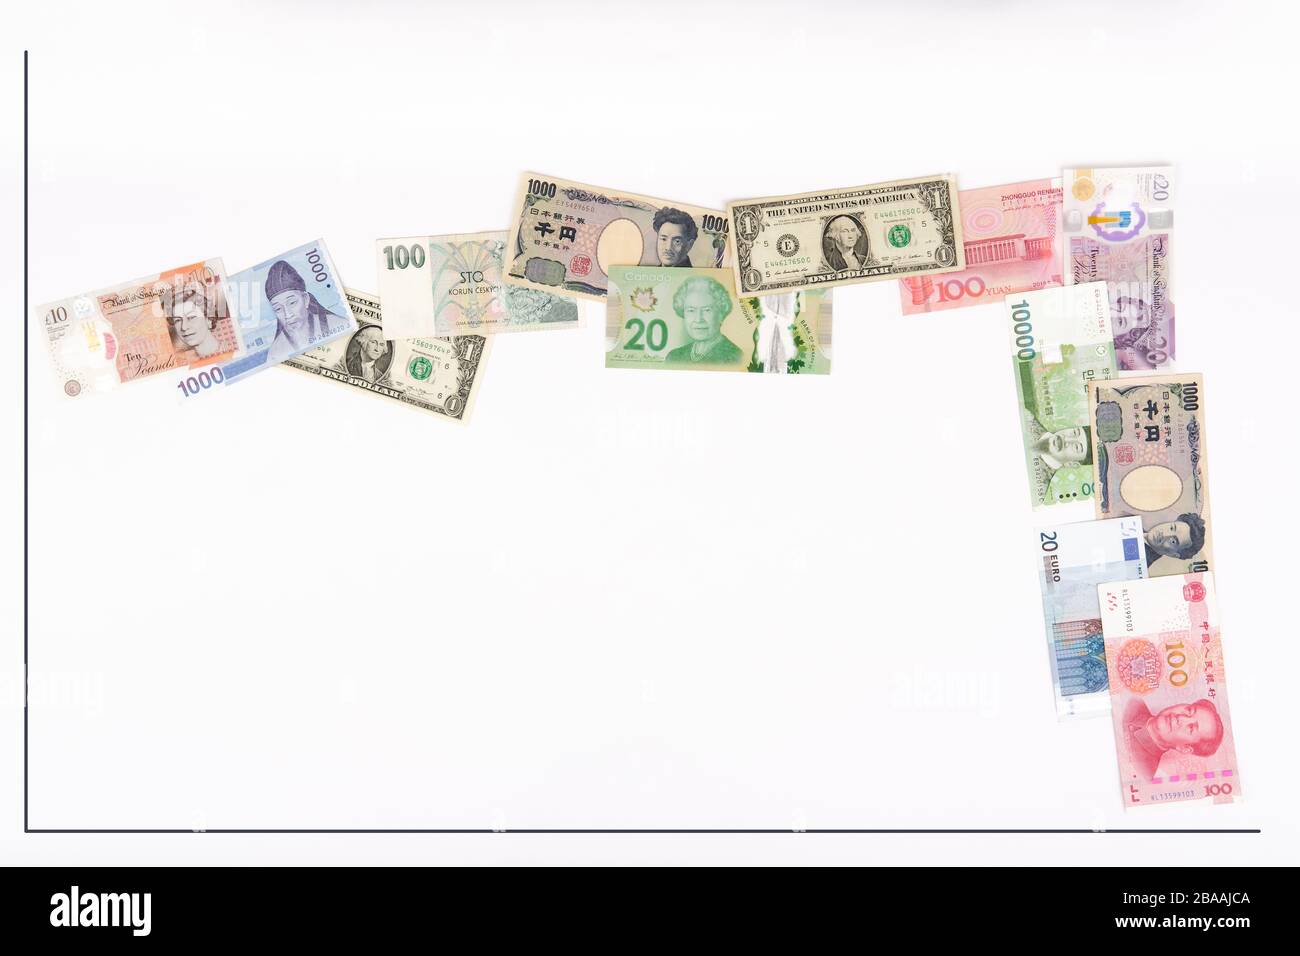 Coronavirus-Konzept für Finanzcrash mit verschiedenen globalen Währungen der östlichen und westlichen Kultur, um eine Grafik der Börse oder Finanzwirtschaft c zu zeigen Stockfoto